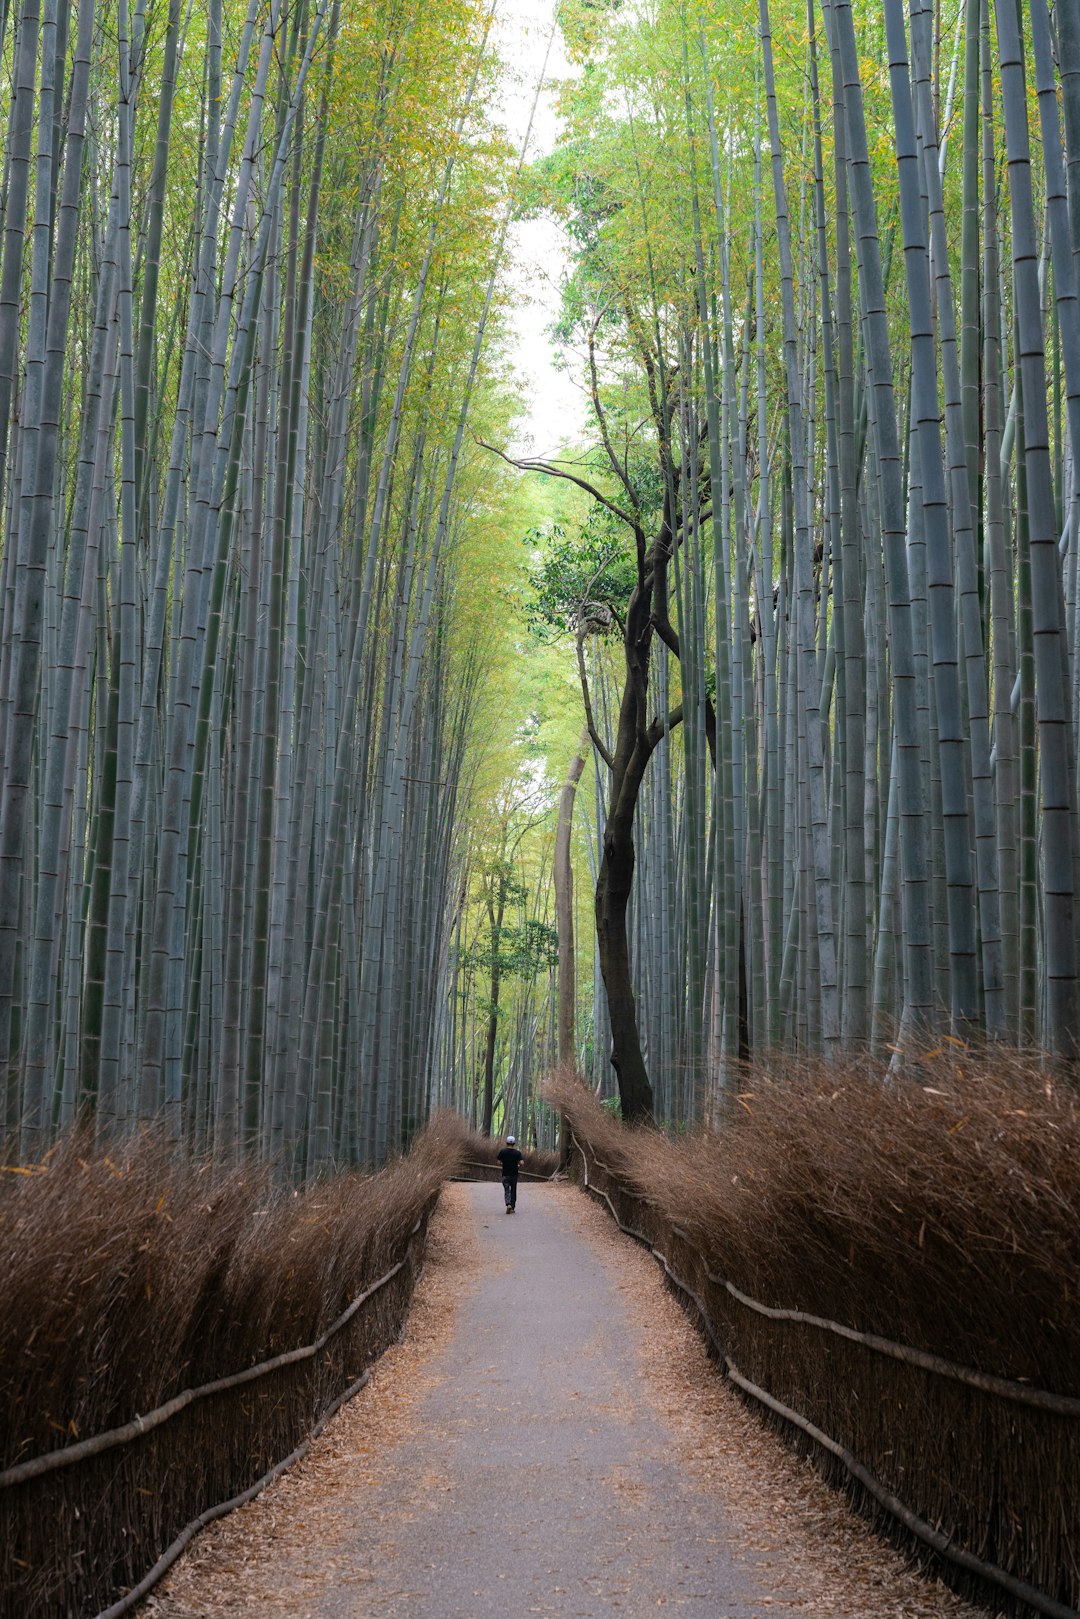 Forest photo spot Arashiyama Bamboo Forest Uji